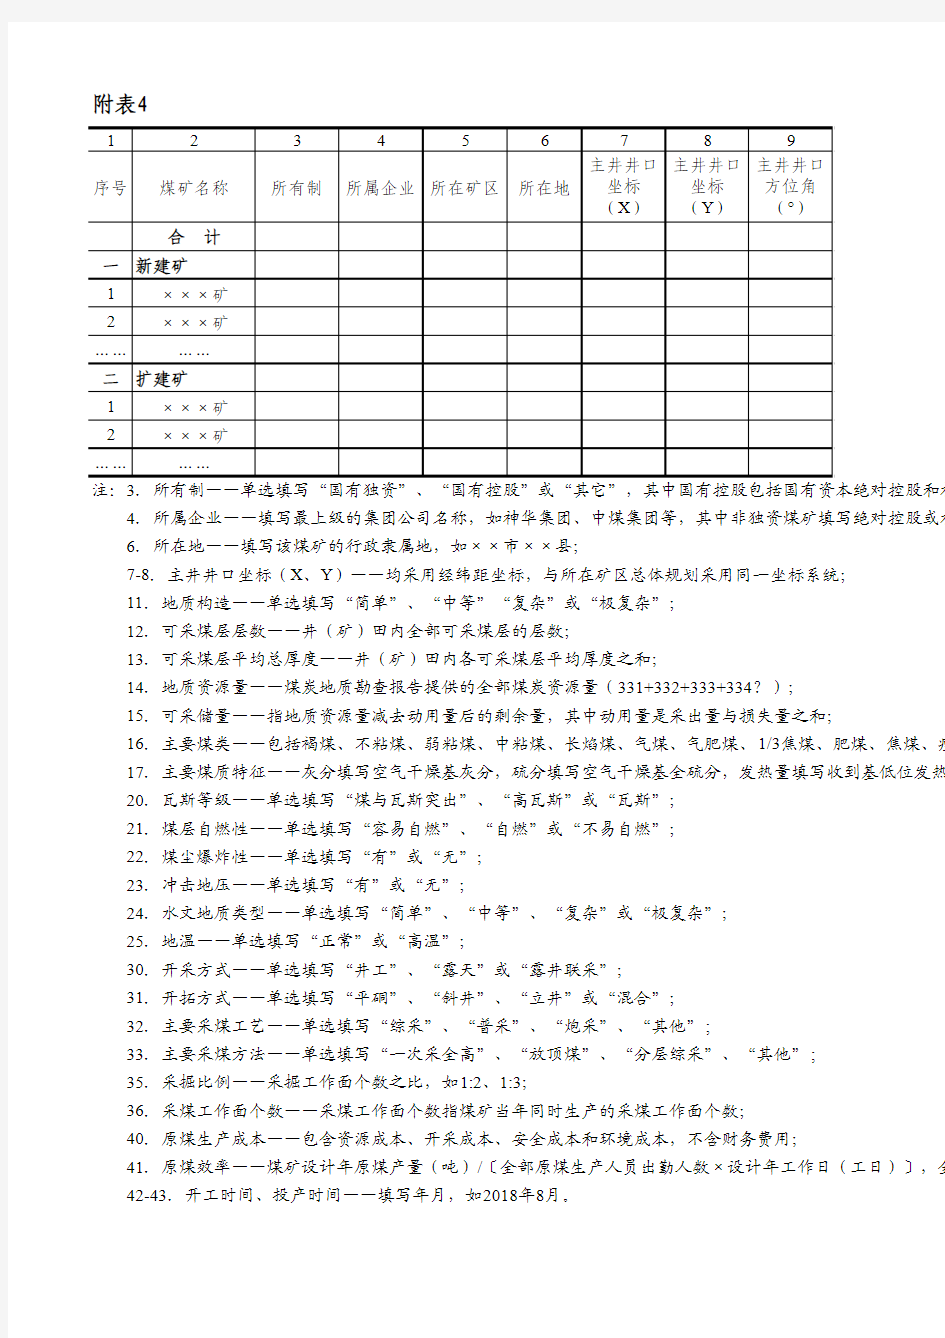 四川省煤炭工业发展“十三五”规划数据表